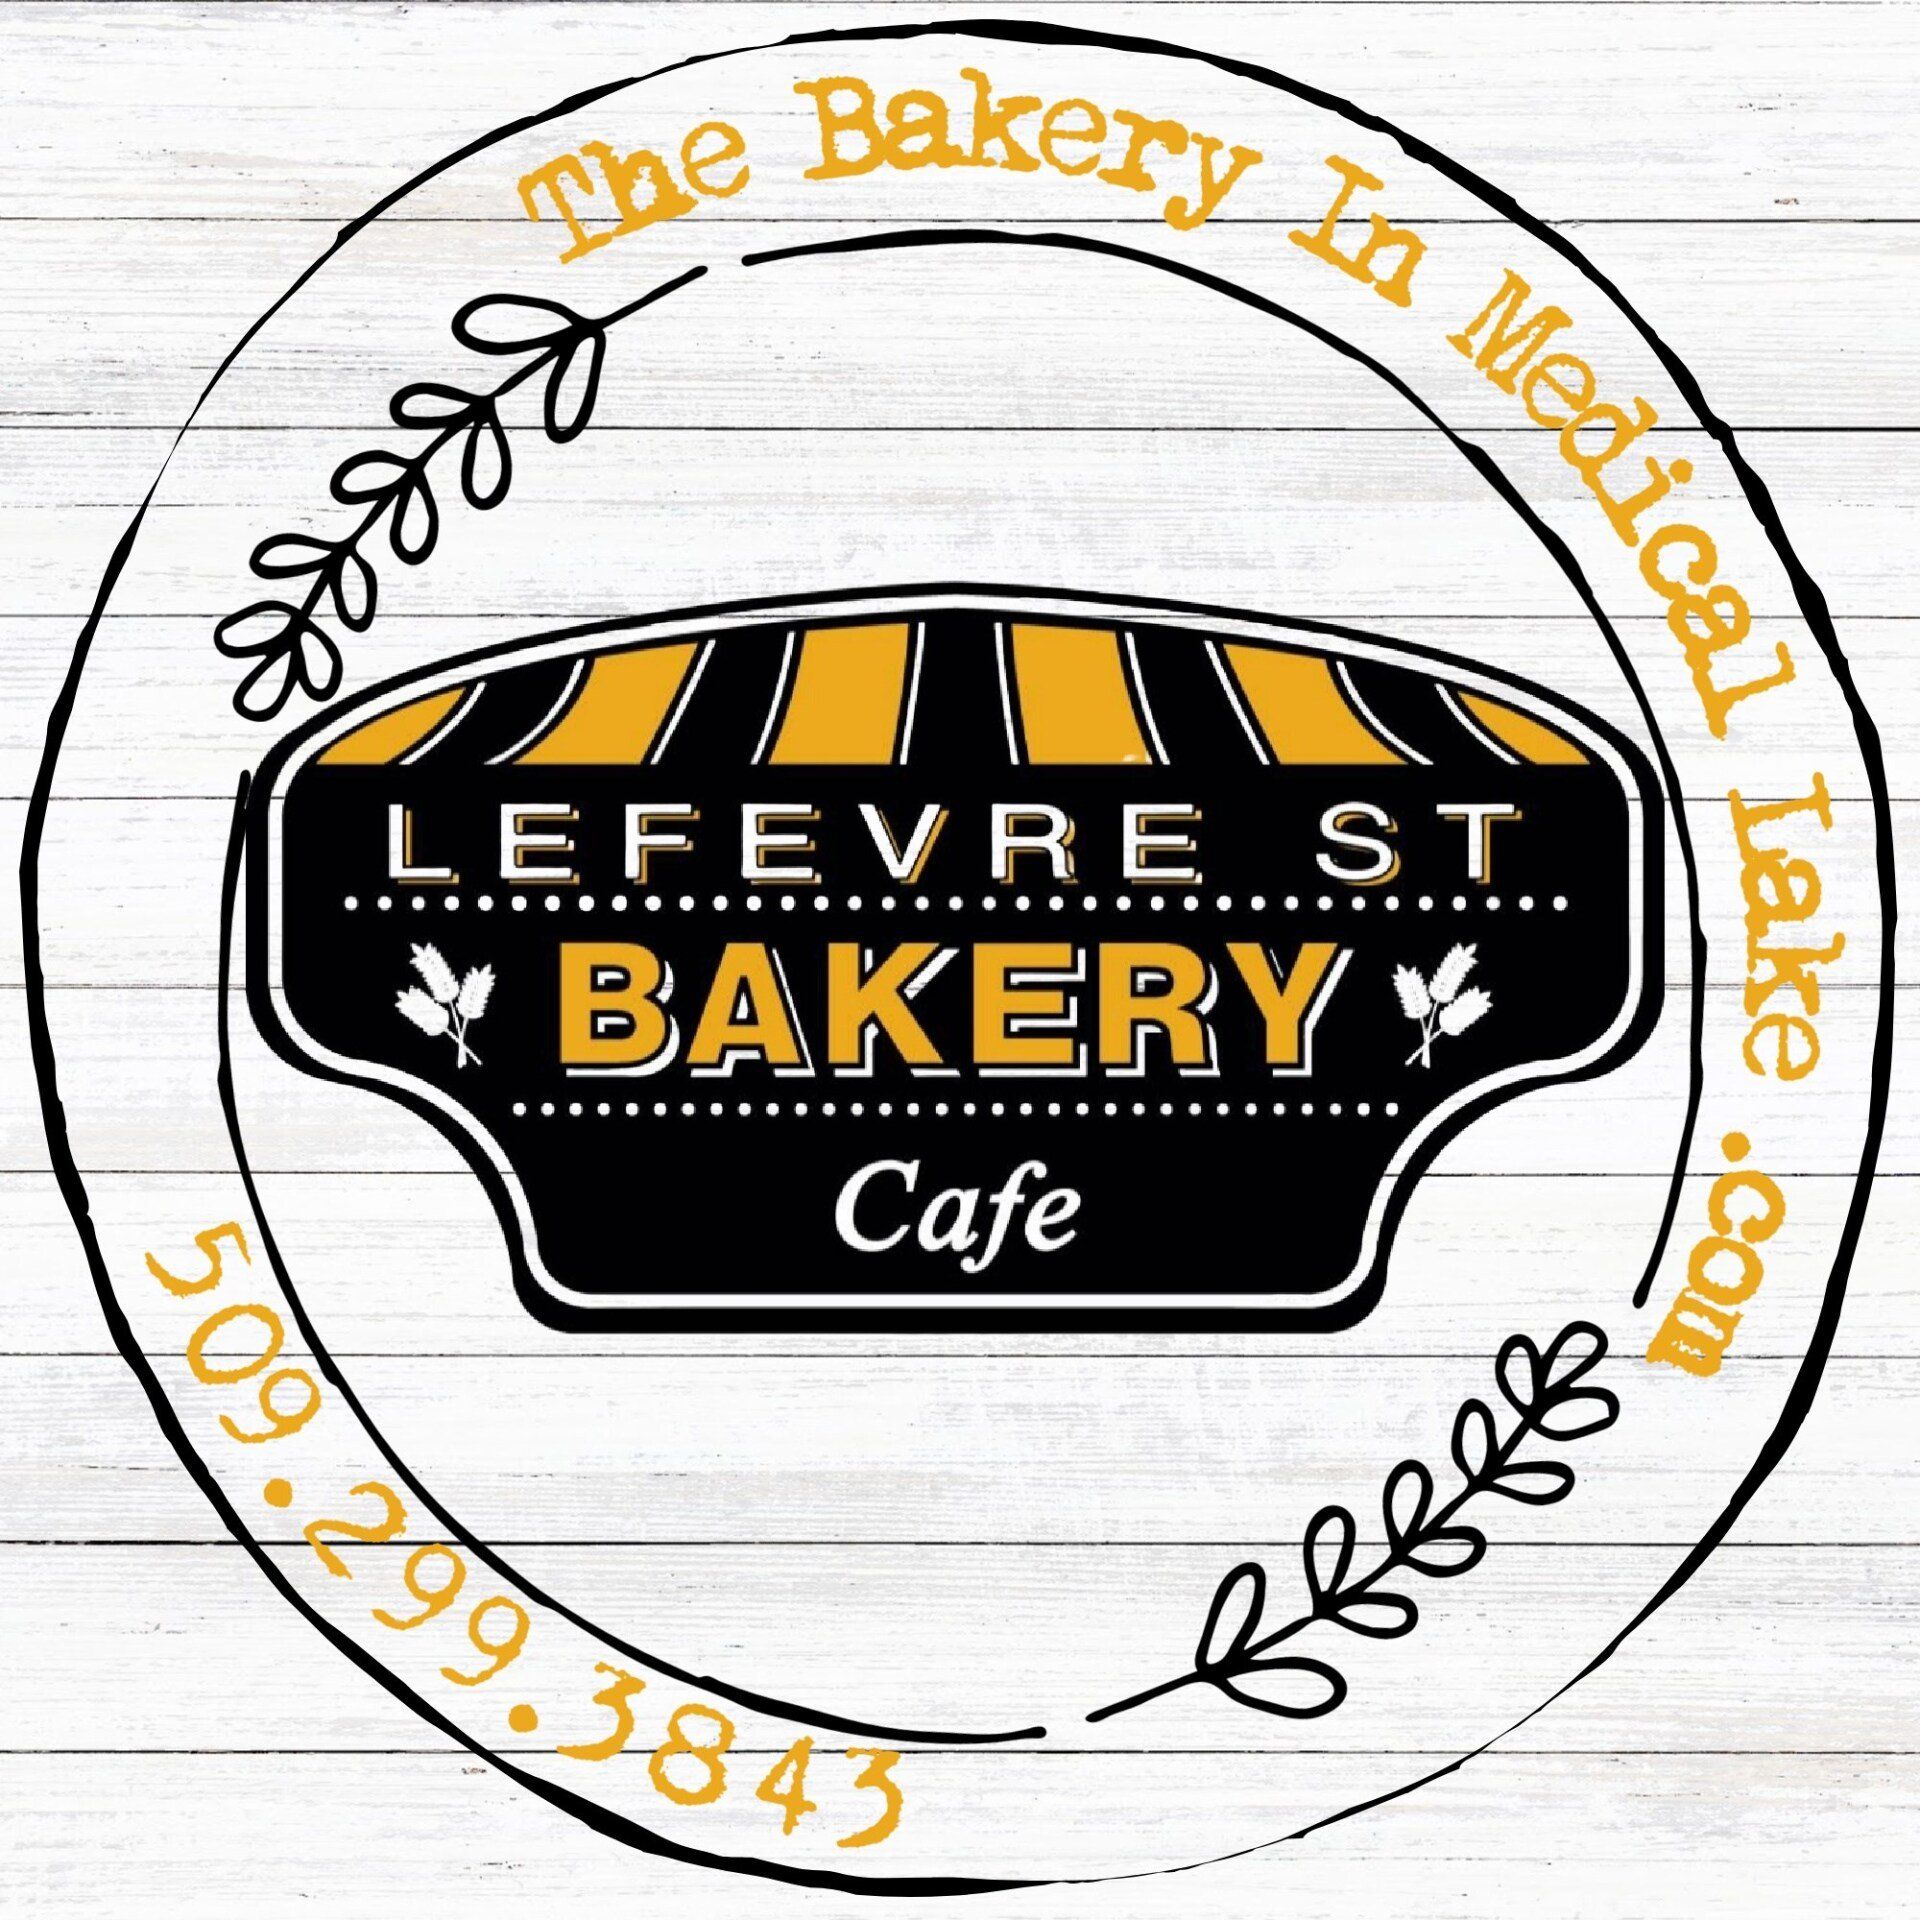 Lefevre Street Bakery & Cafe